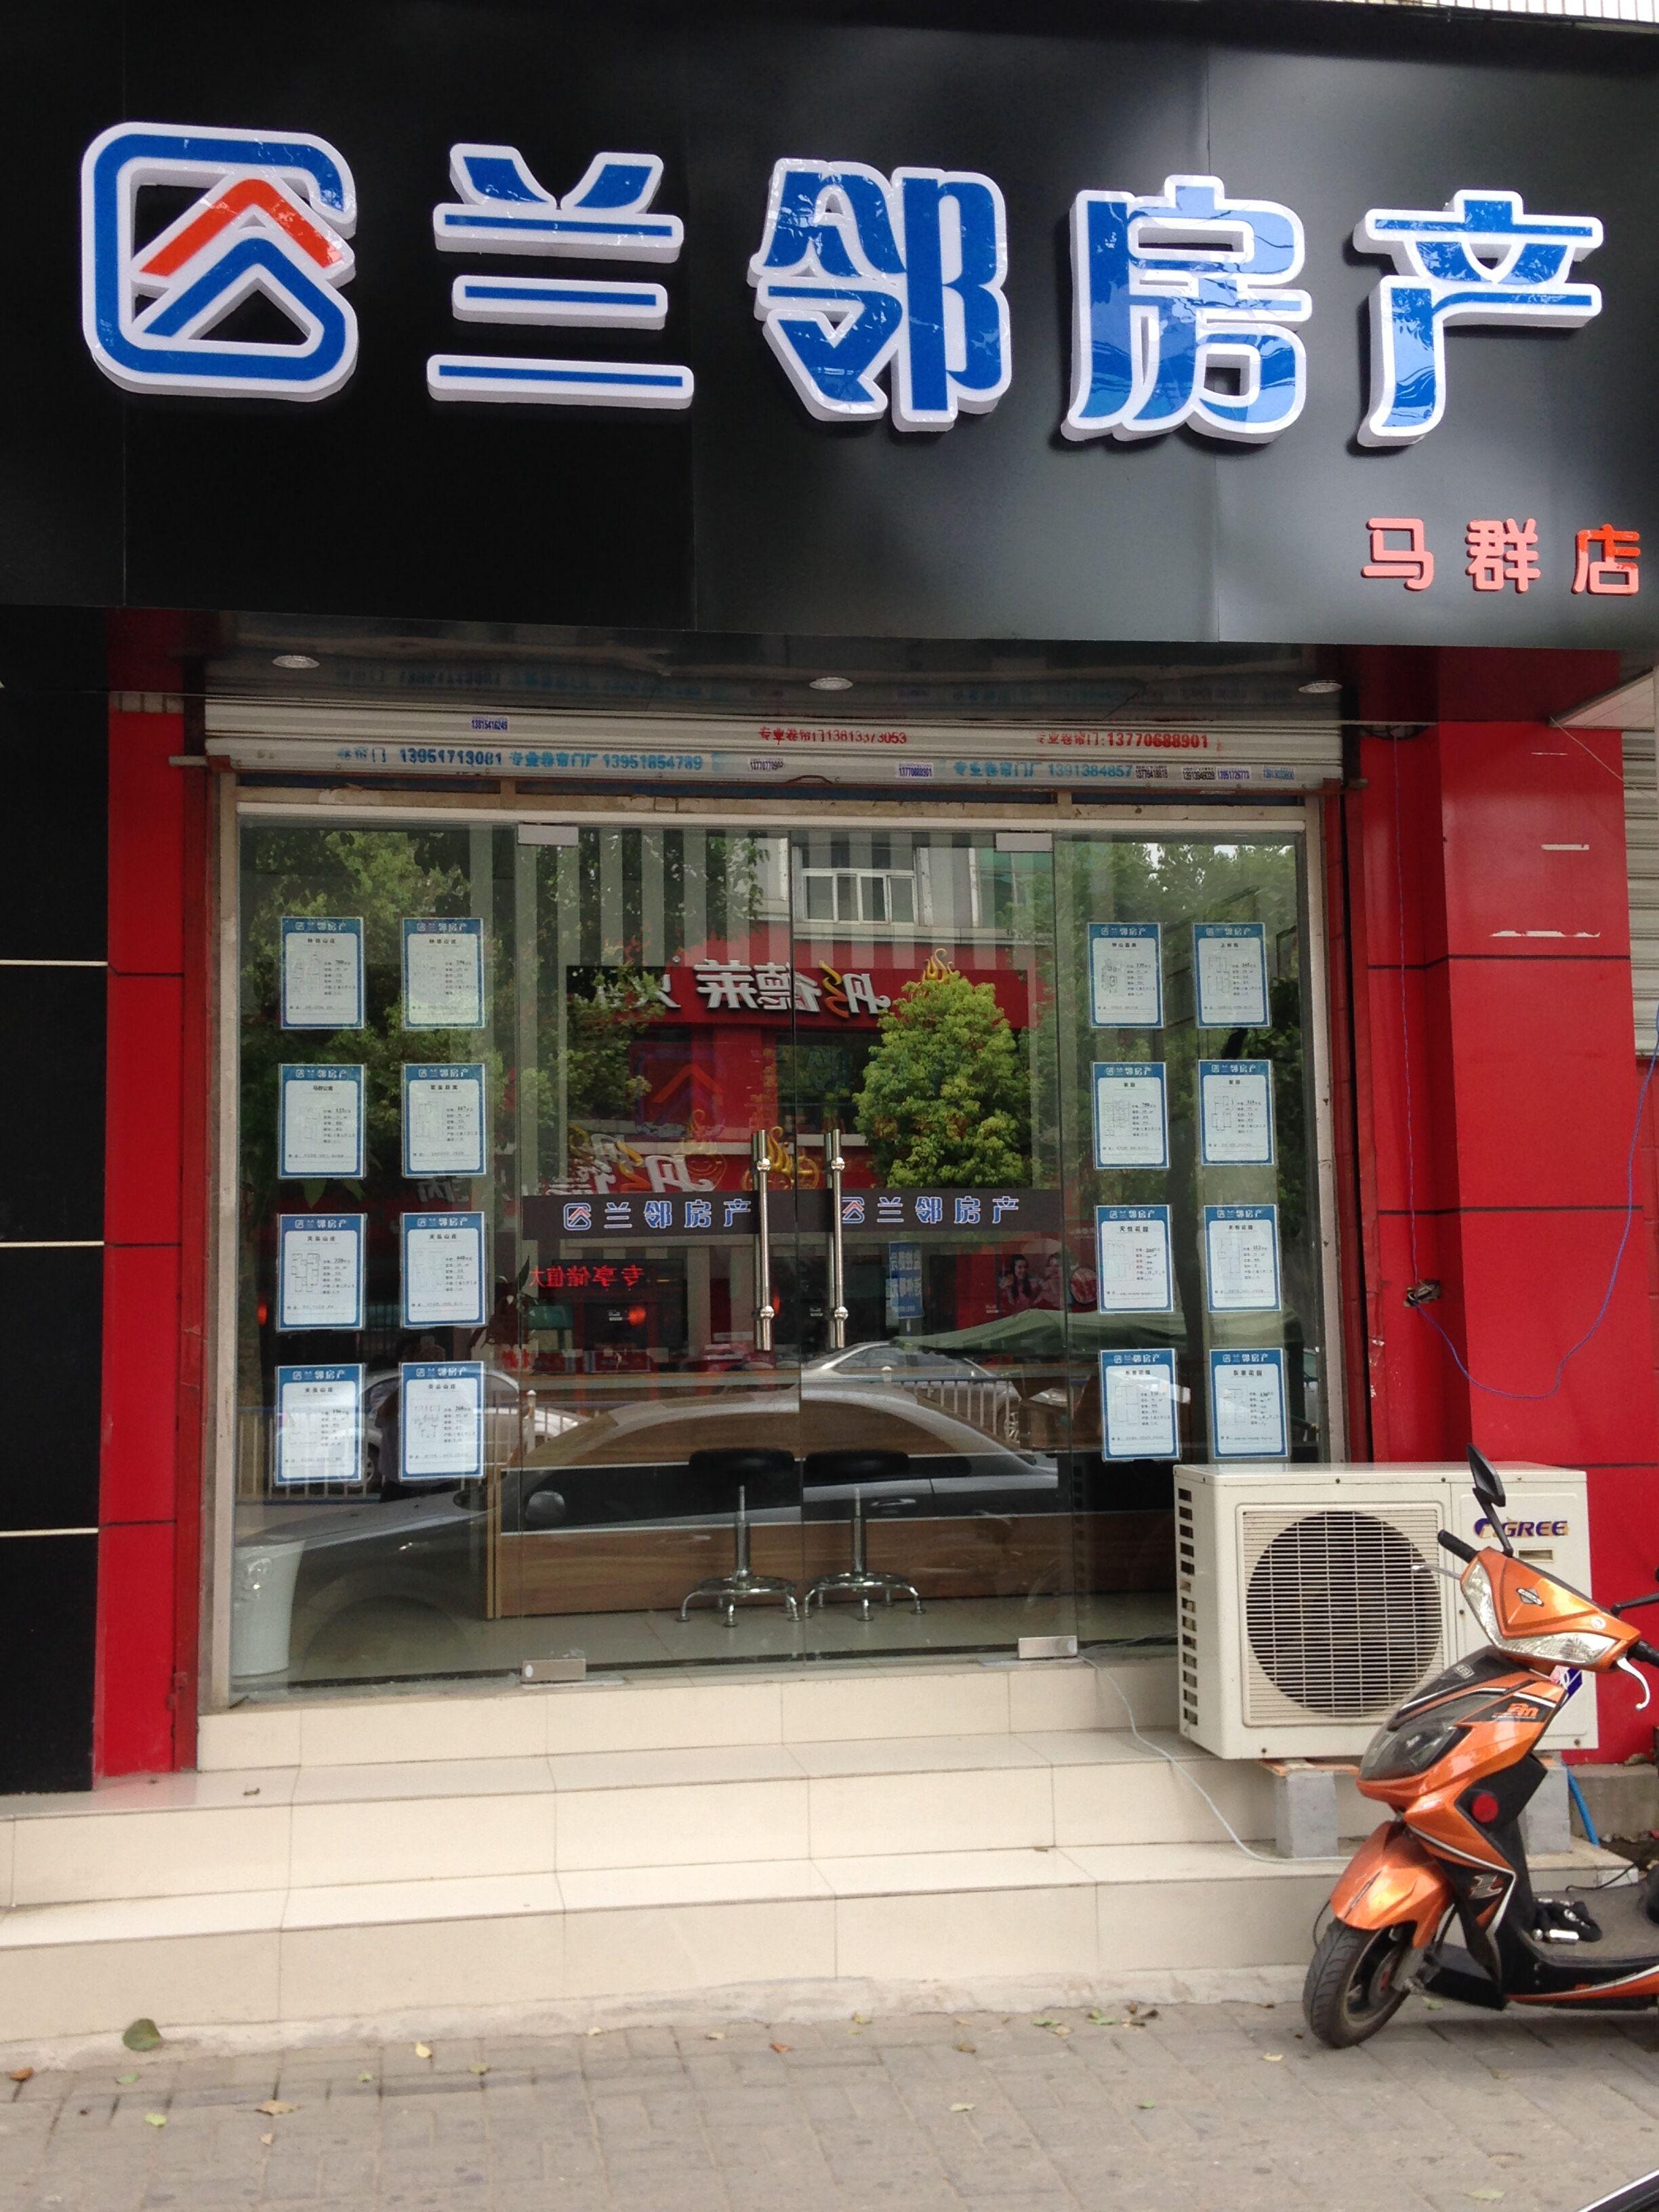 南京兰邻房产经纪有限公司,是一家南京本土房地产连锁经纪企业,主要在